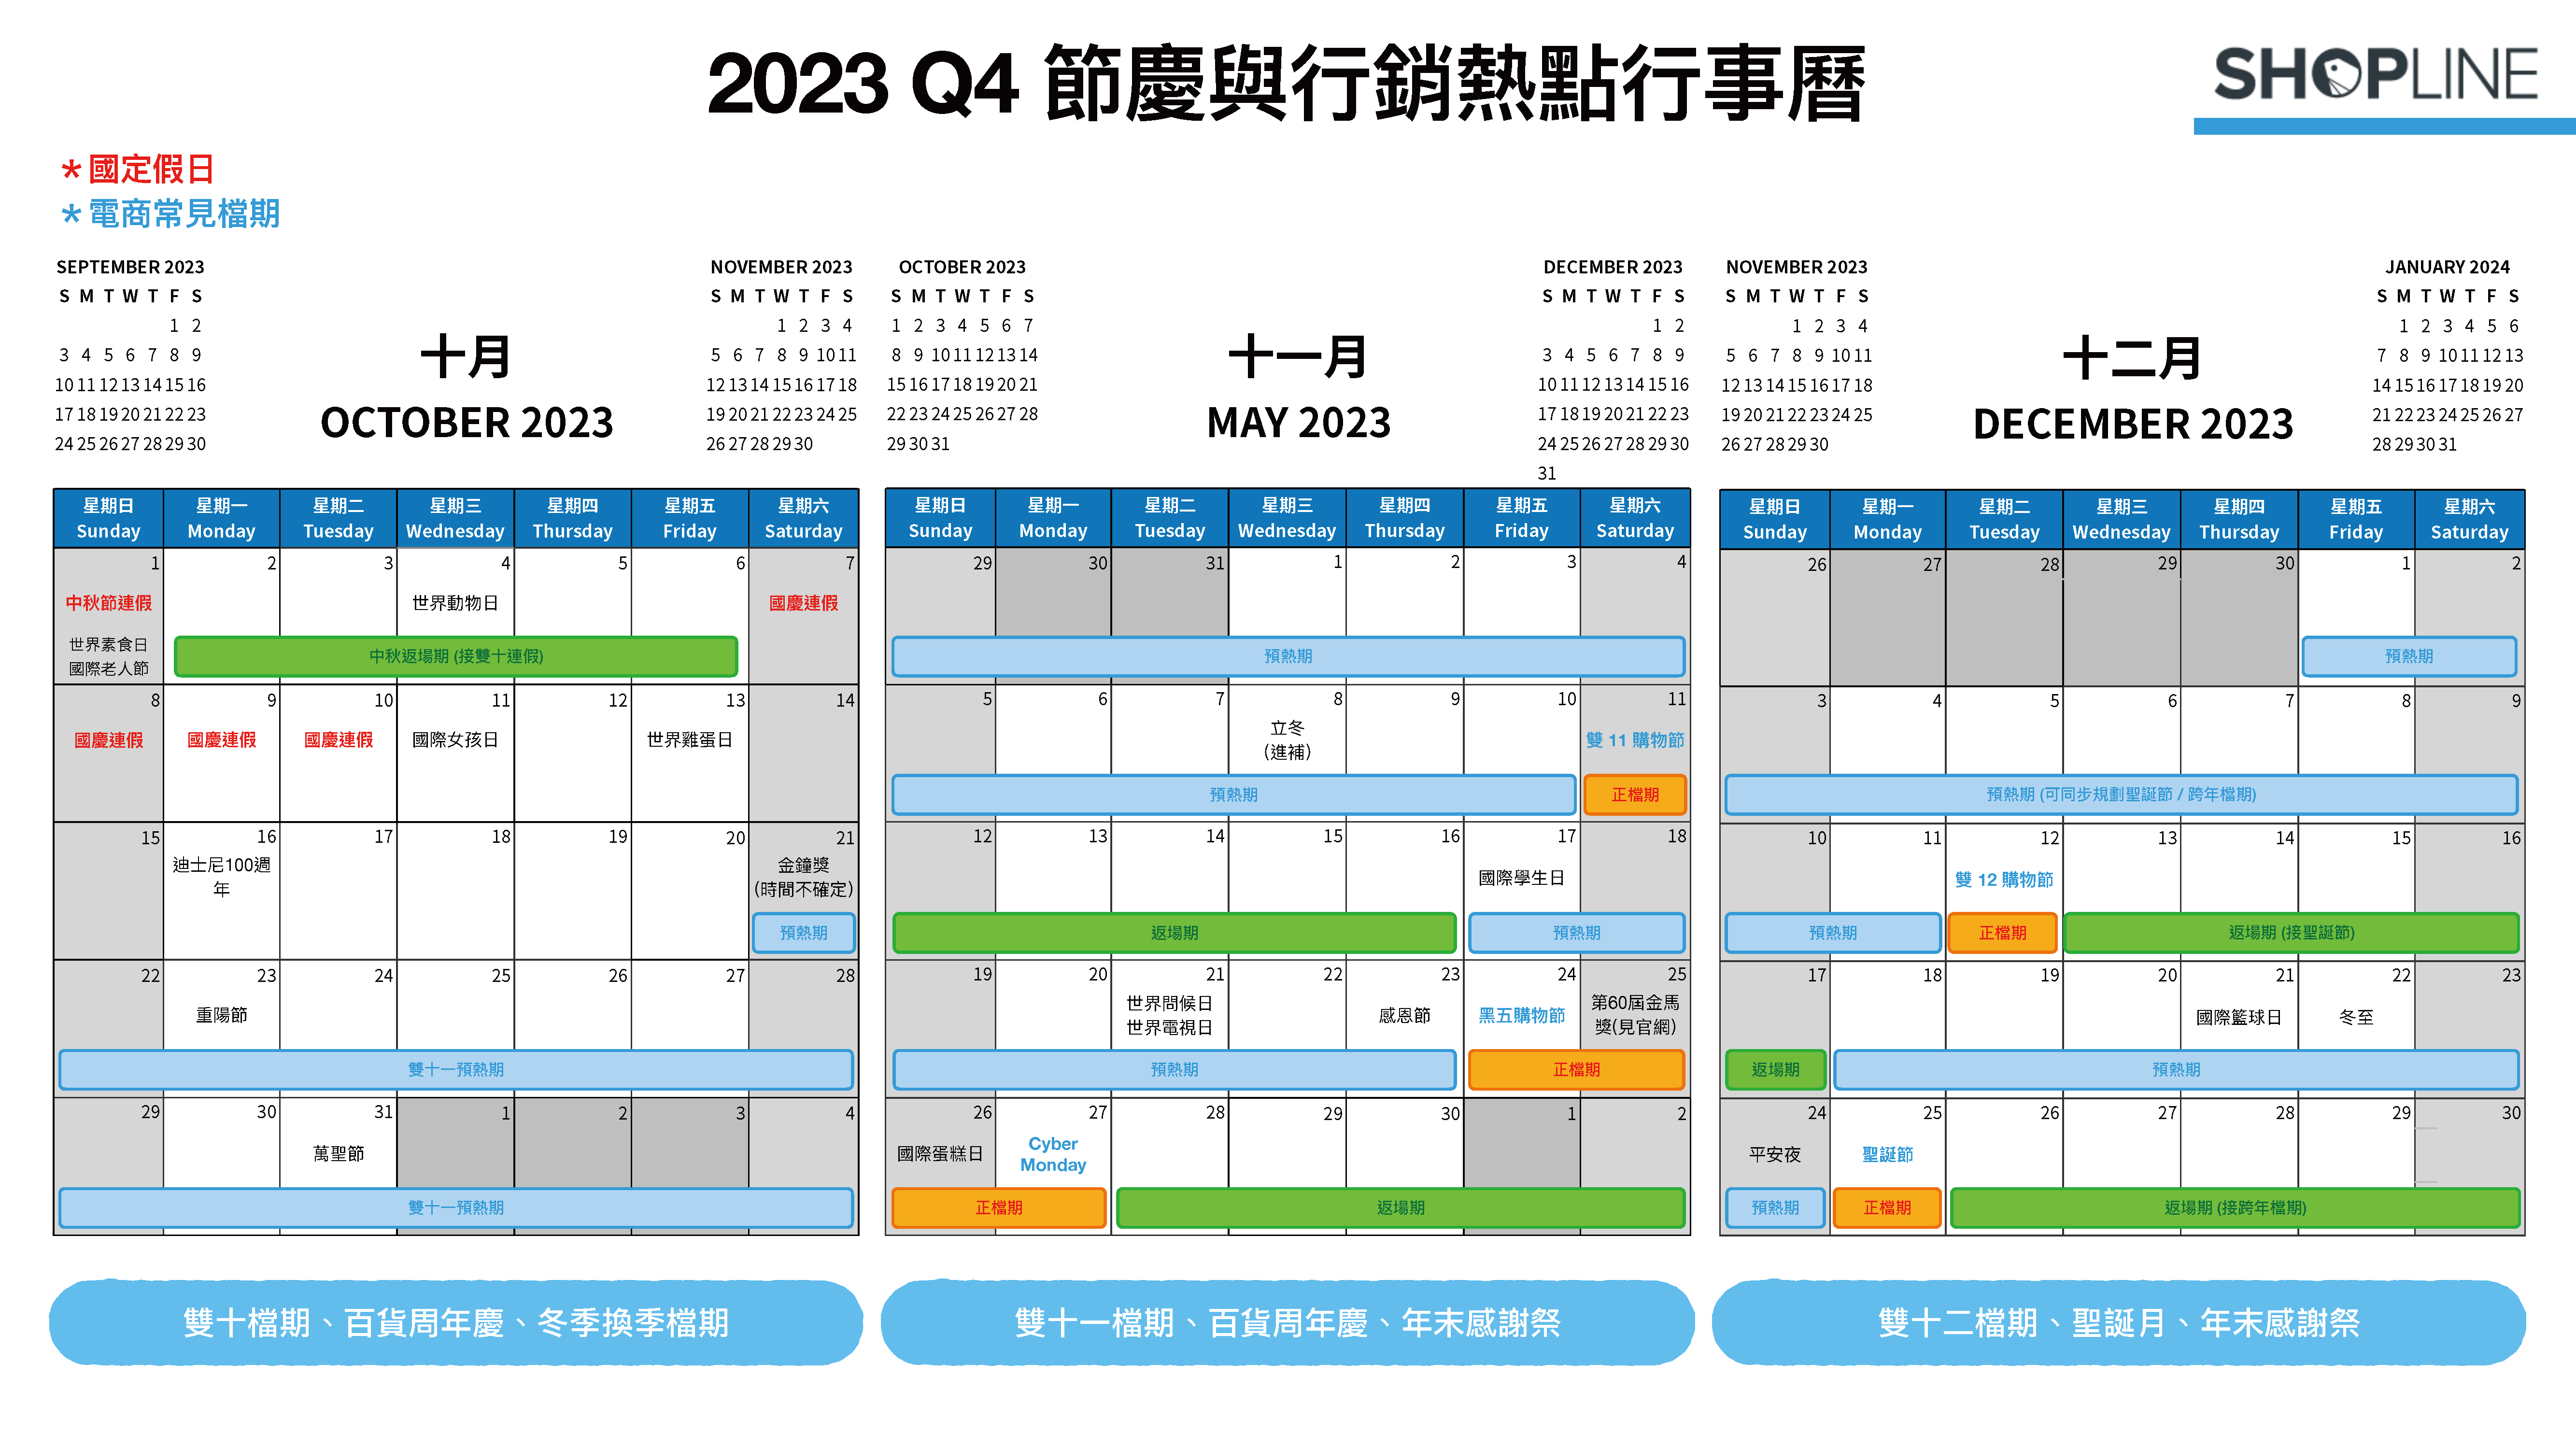 2023 Q4 節慶與行銷熱點月曆